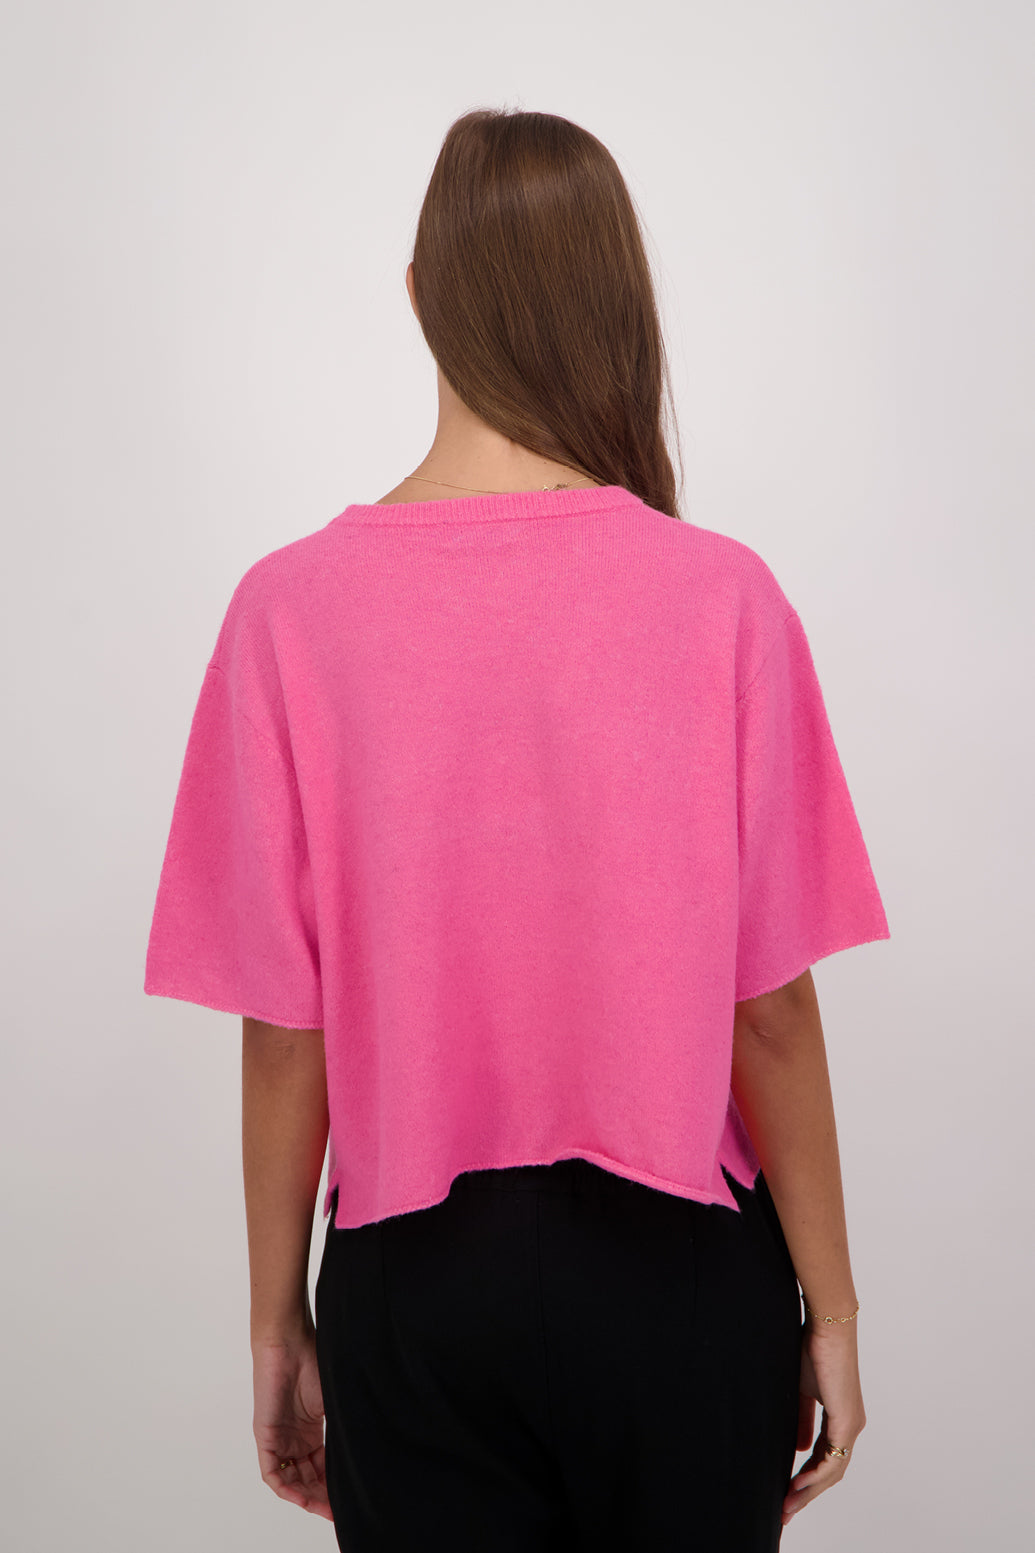 Dapper Wool Blend Short Sleeve Top/T-Shirt - Pink